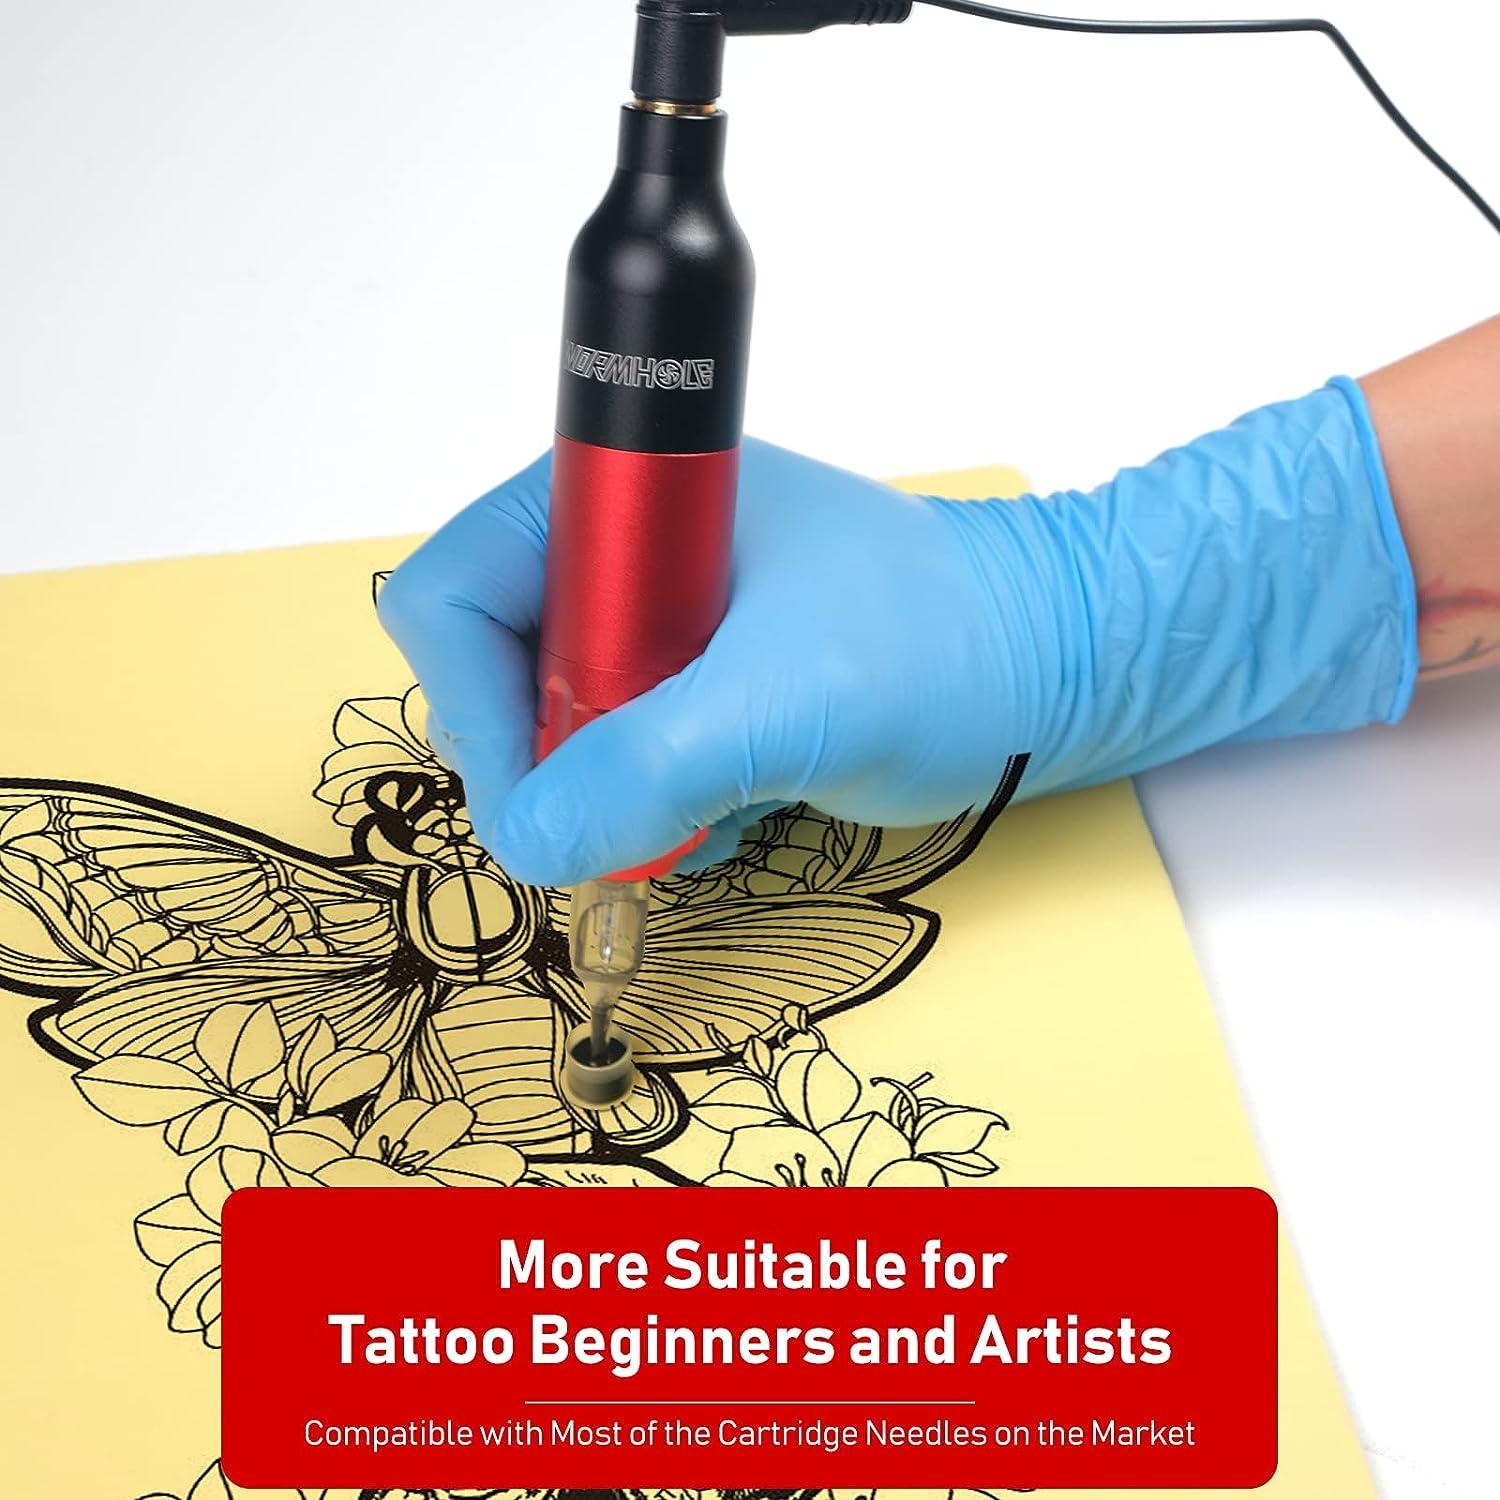 Dragonhawk Complete Tattoo Kit for Beginners 2 Pro Tattoo Machine Tattoo  Power Supply Kit Tattoo Inks 20 Tattoo Needles Tips Tattoo Supplies